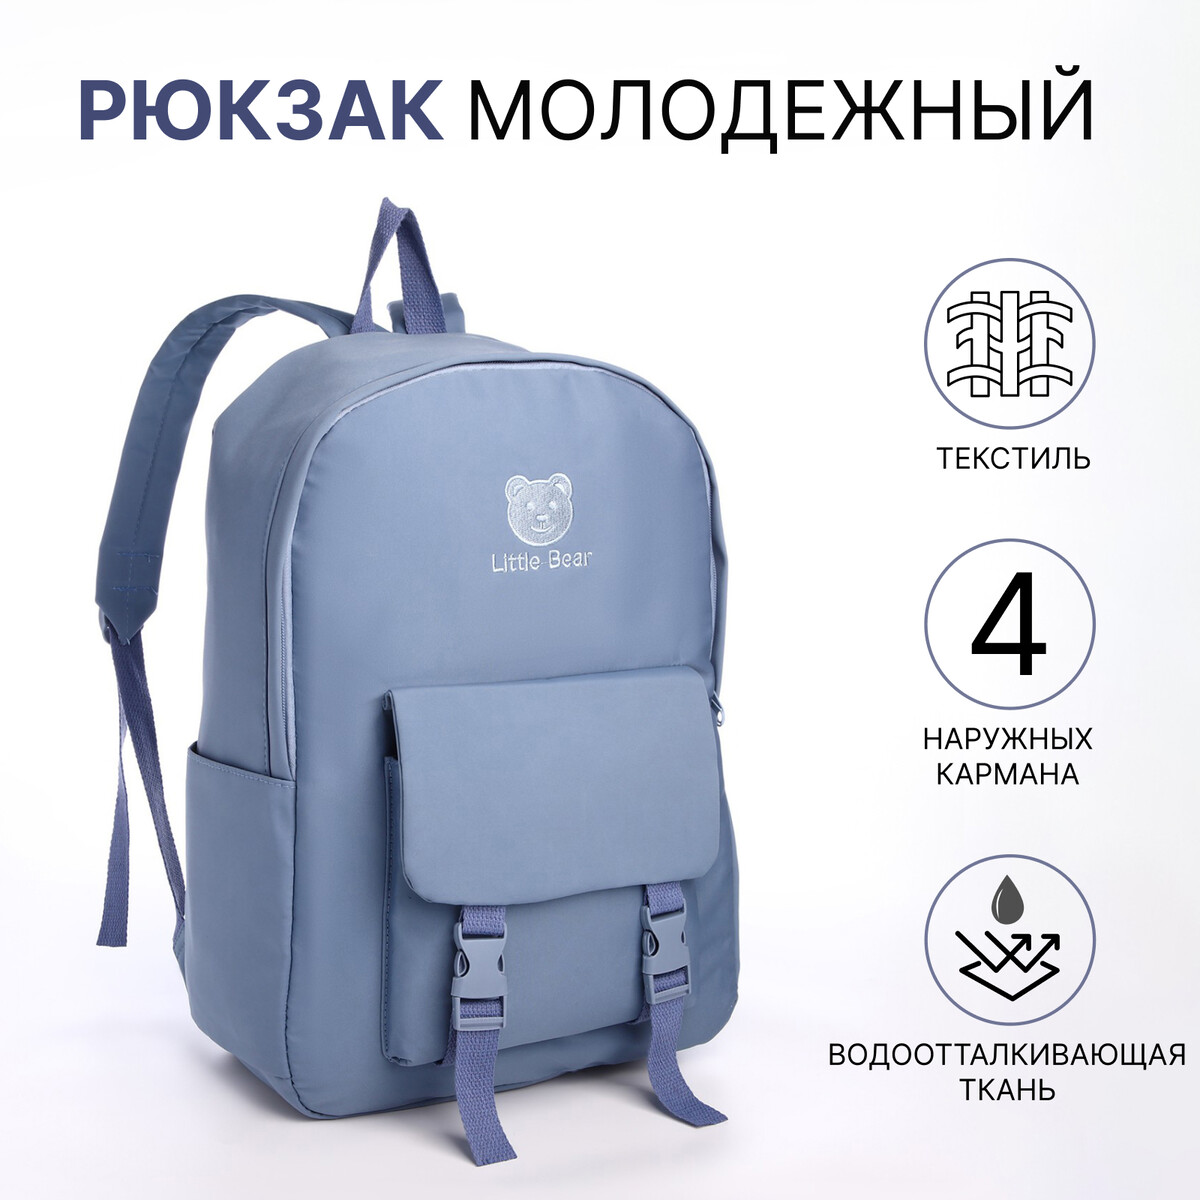 Рюкзак школьный из текстиля на молнии, 4 кармана, цвет синий